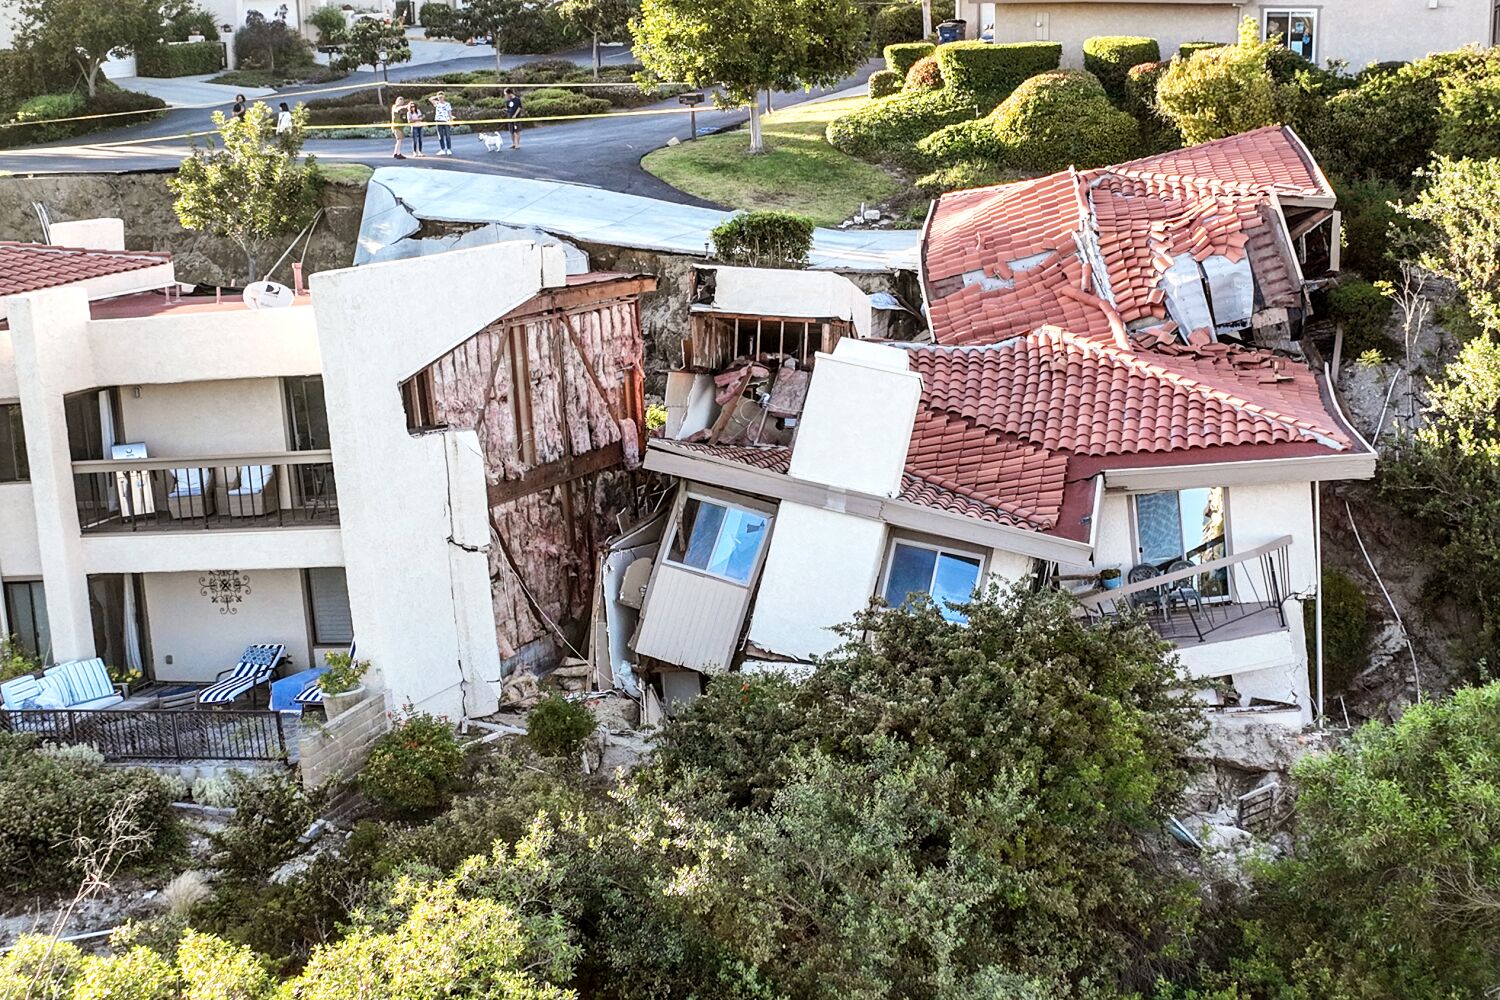 ‘Superb’ injury to houses in landslide Rolling Hills Estates